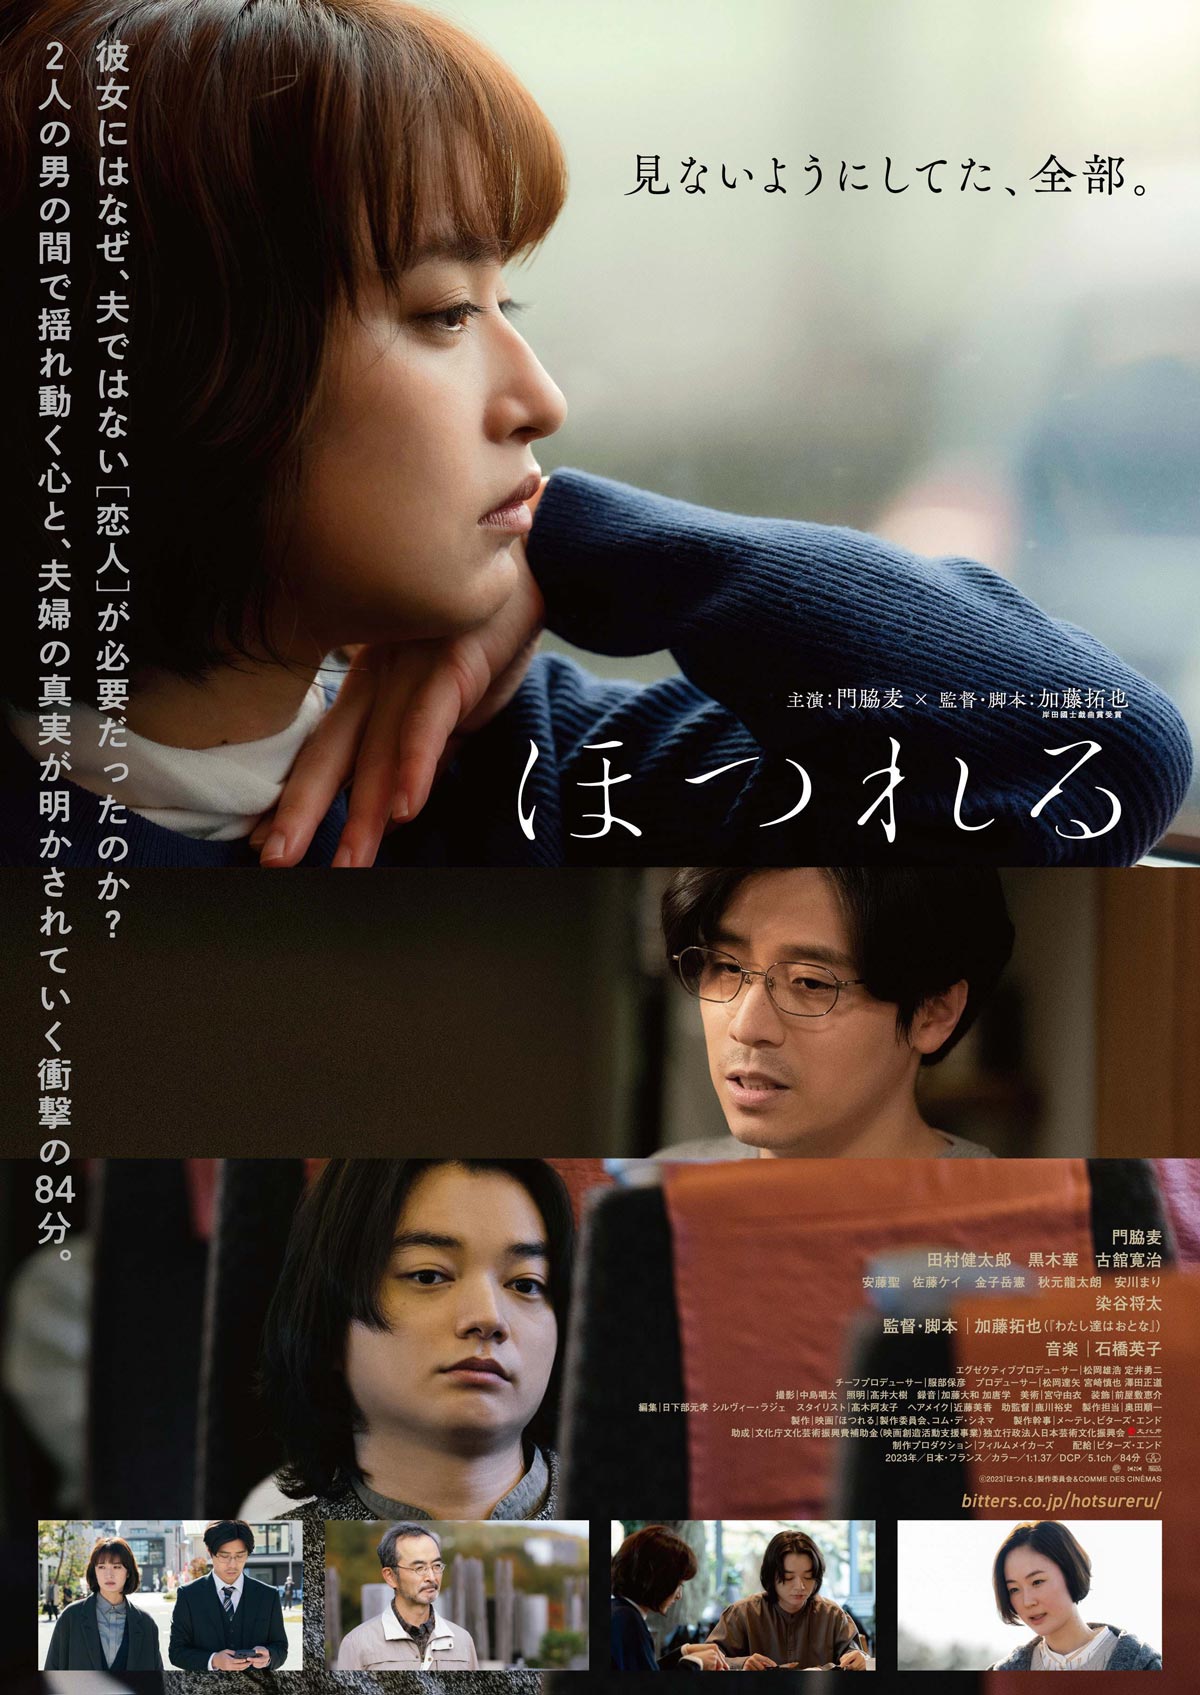 Fly On (Hotsureru) film - Takuya Kato - poster